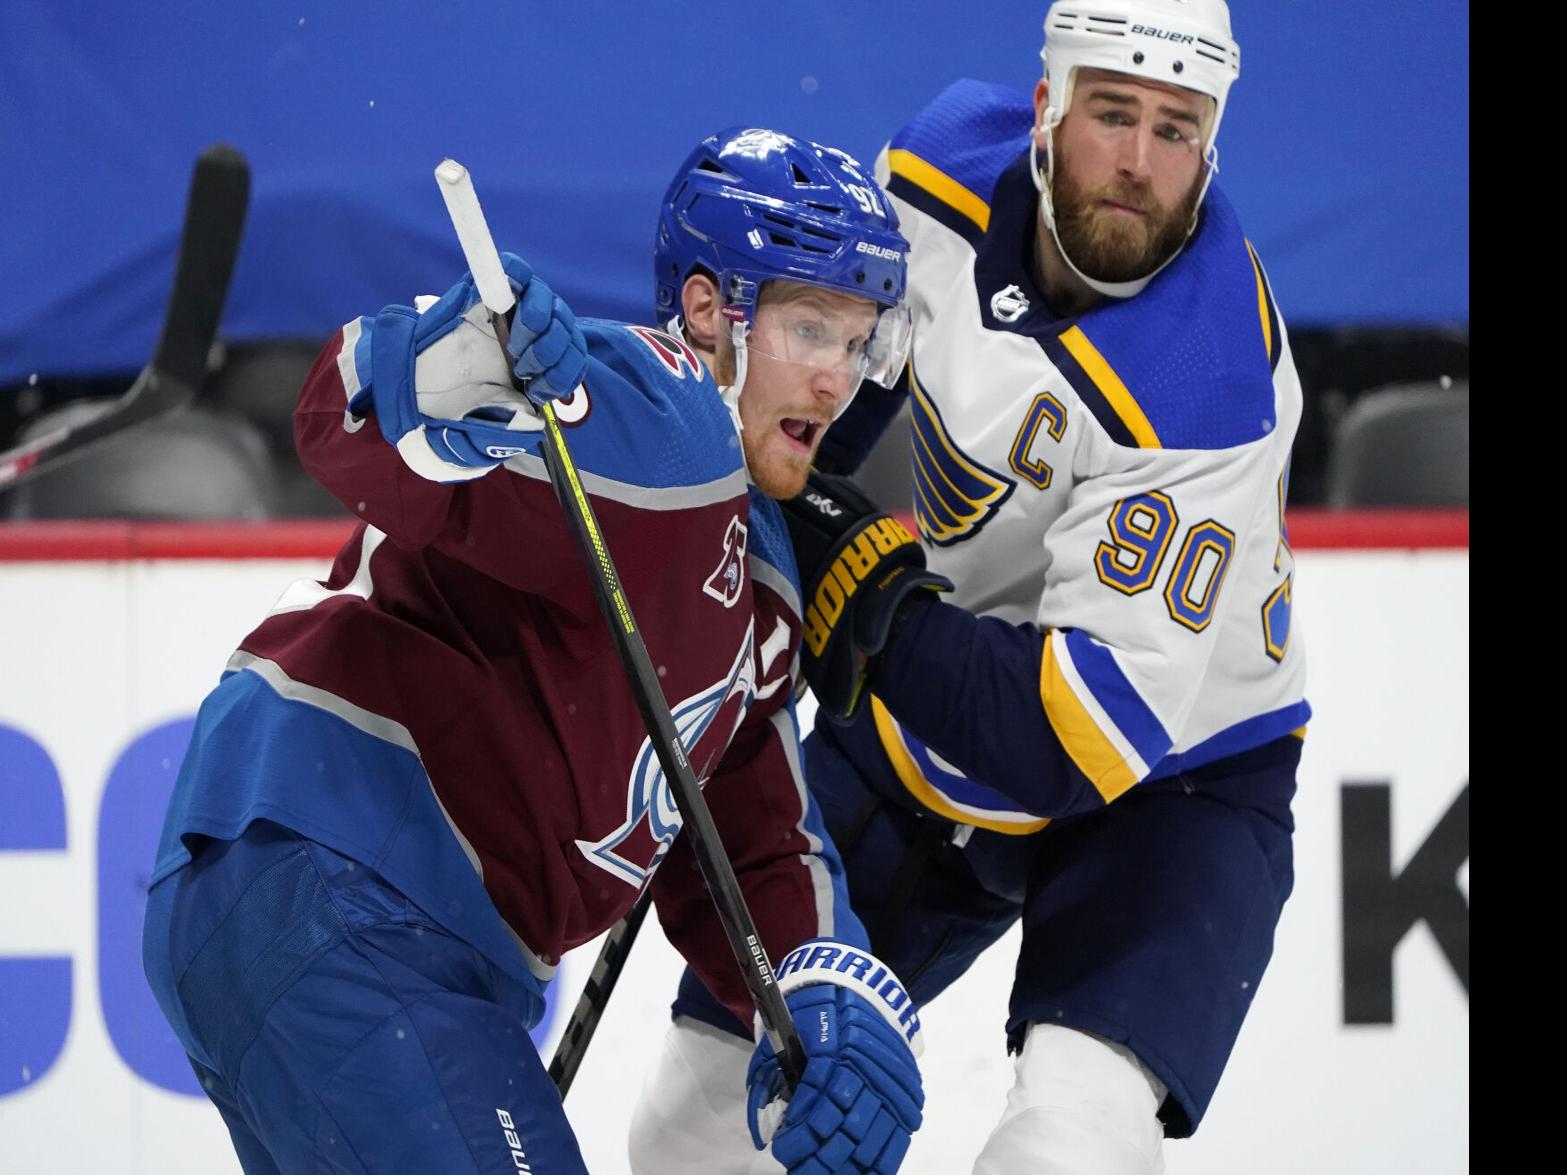 Landeskog, Rantanen come up big in NHL All-Star tournament – The Denver Post